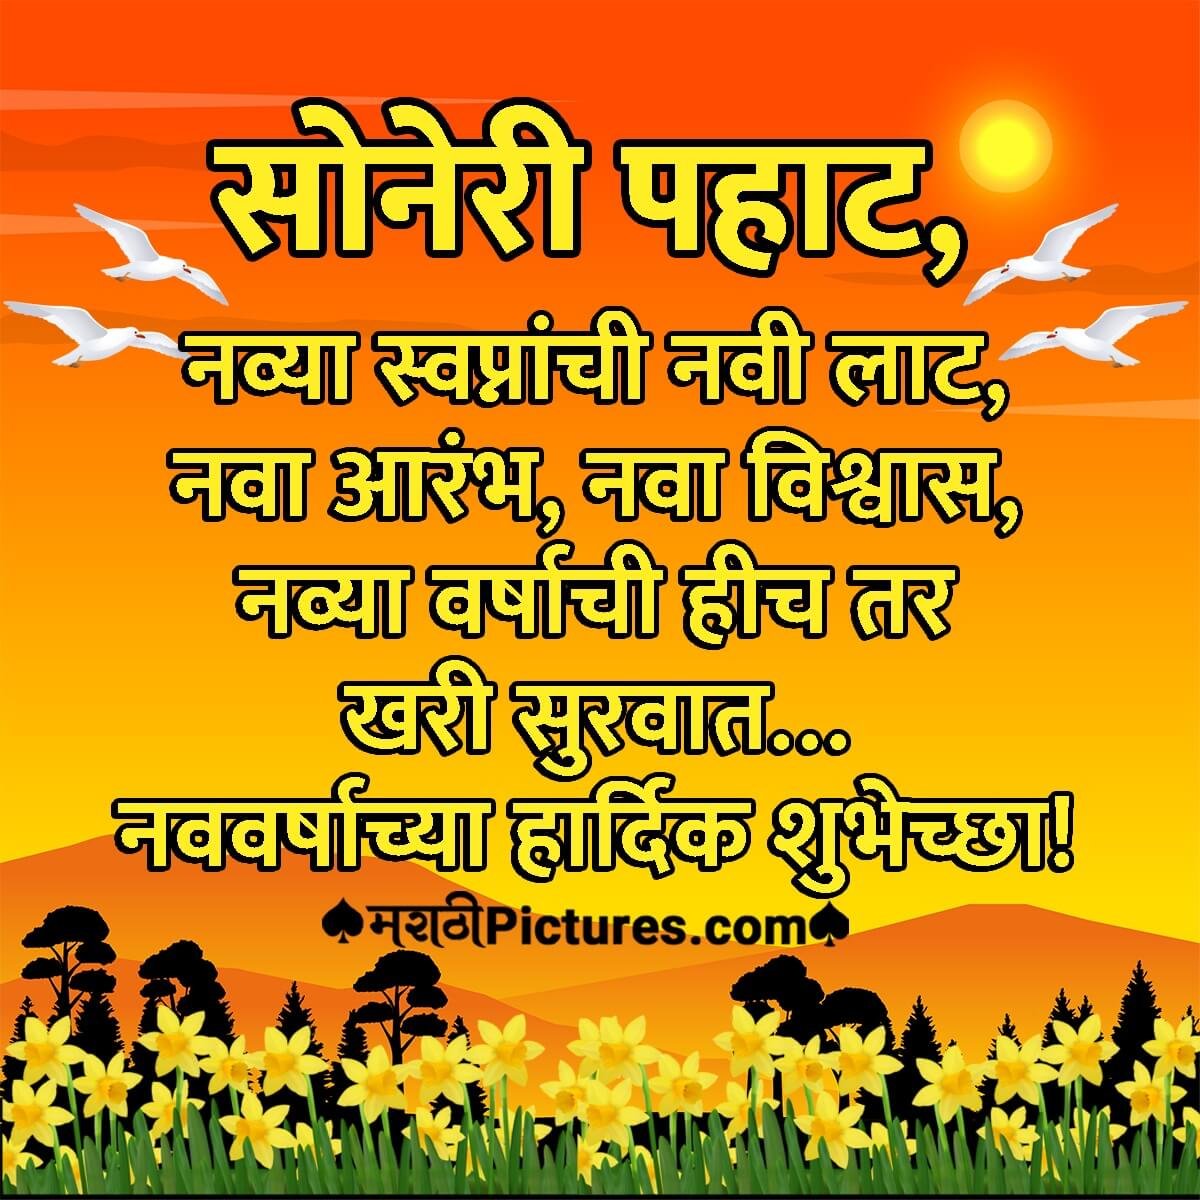 Happy New Year Marathi Quote